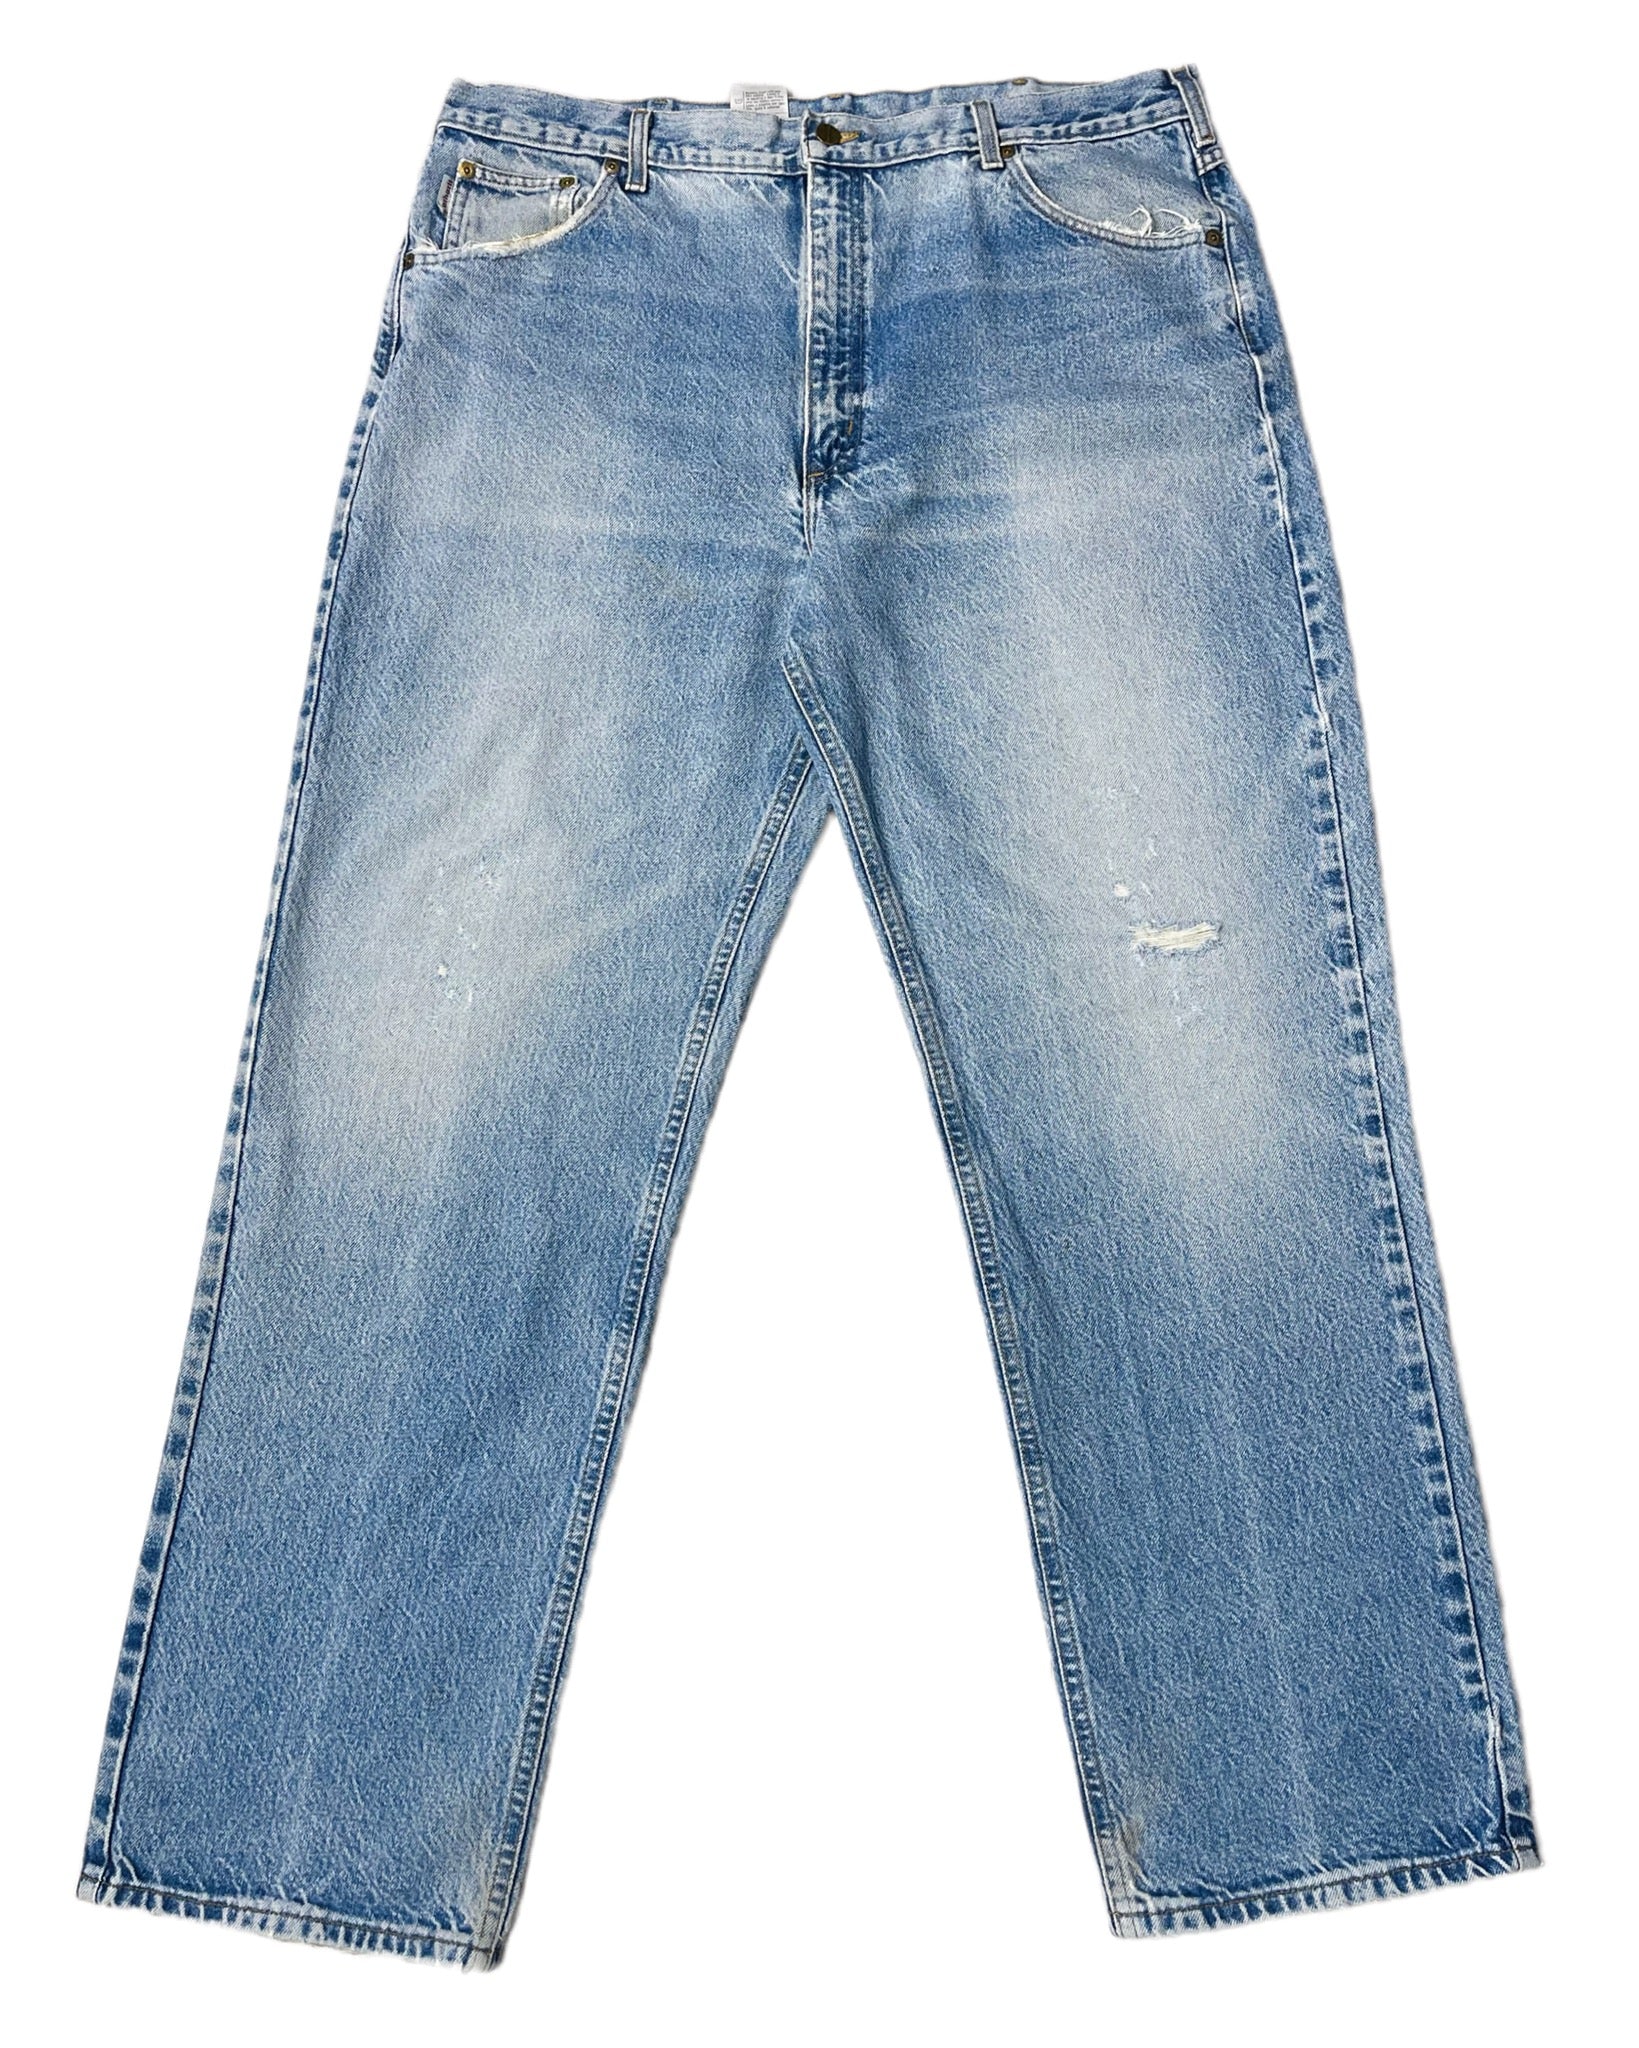  Jeans Carhartt Jean - B170DST - W42 L32 - PLOMOSTORE